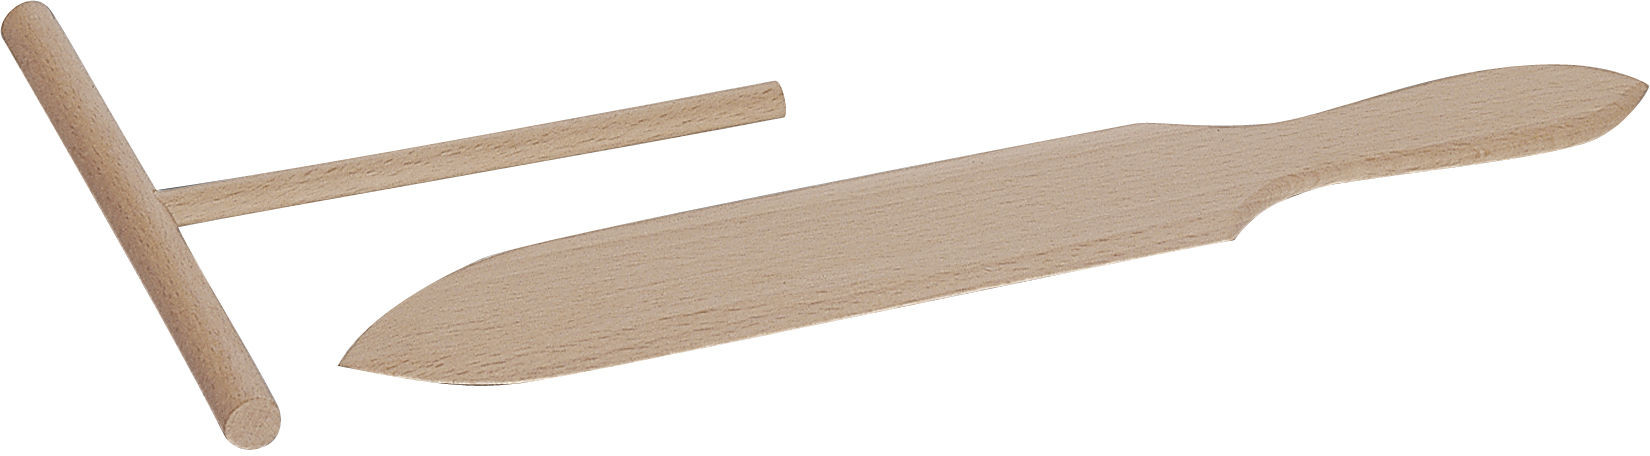 Staub Staub - Drewniane narzędzie do naleśników i szpatułka 40509-699-0